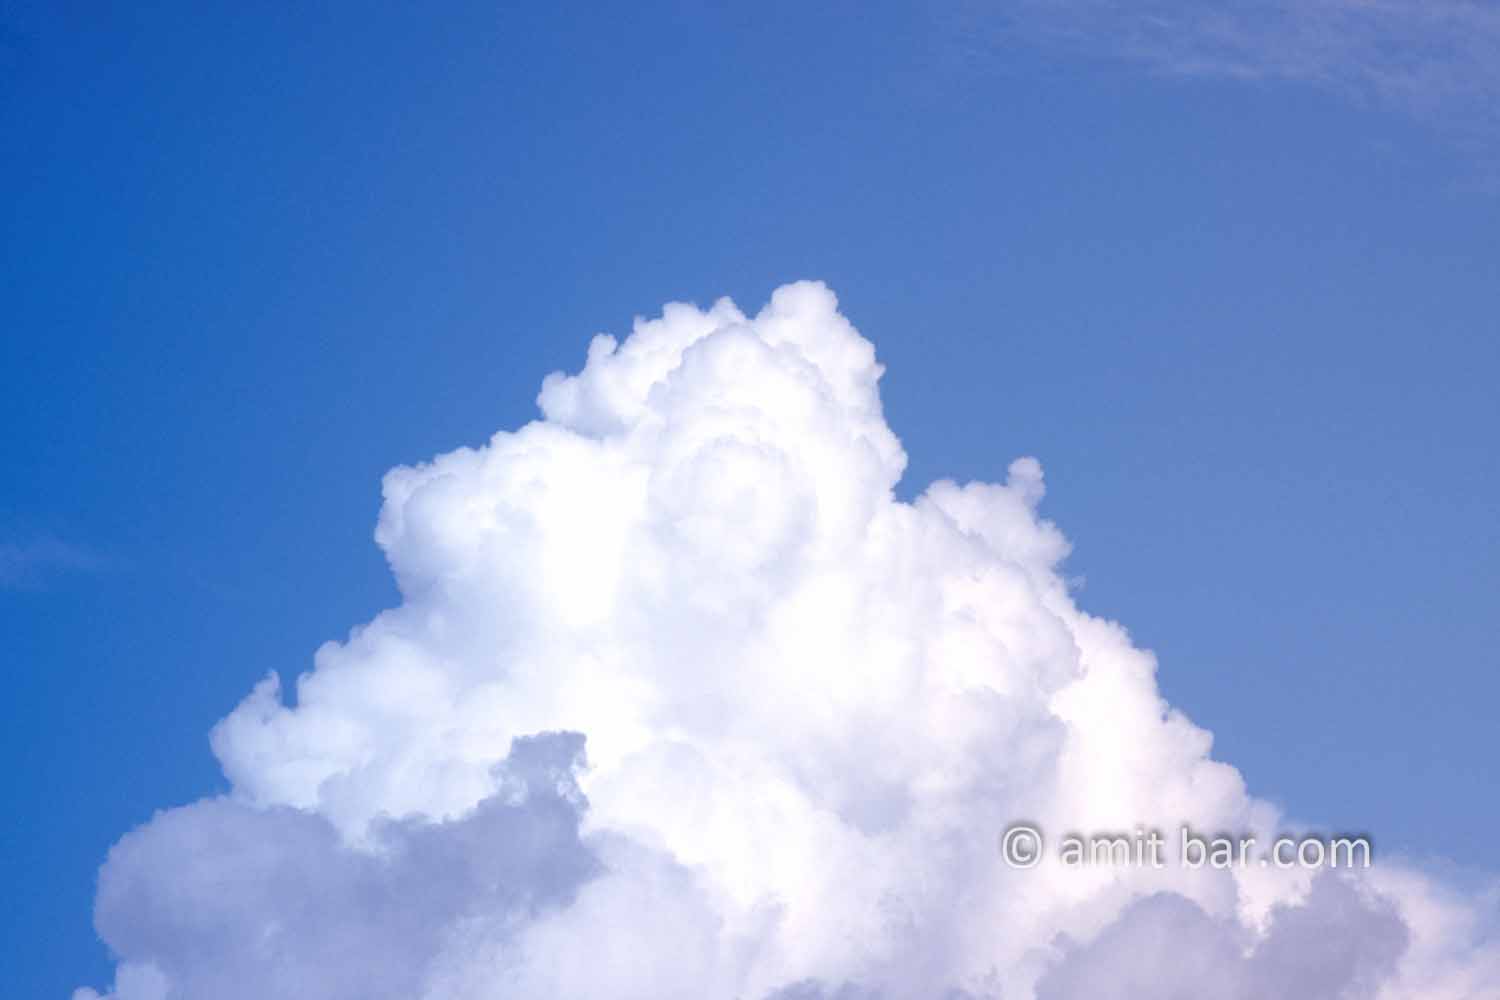 Clouds XI: White clouds in blue sky